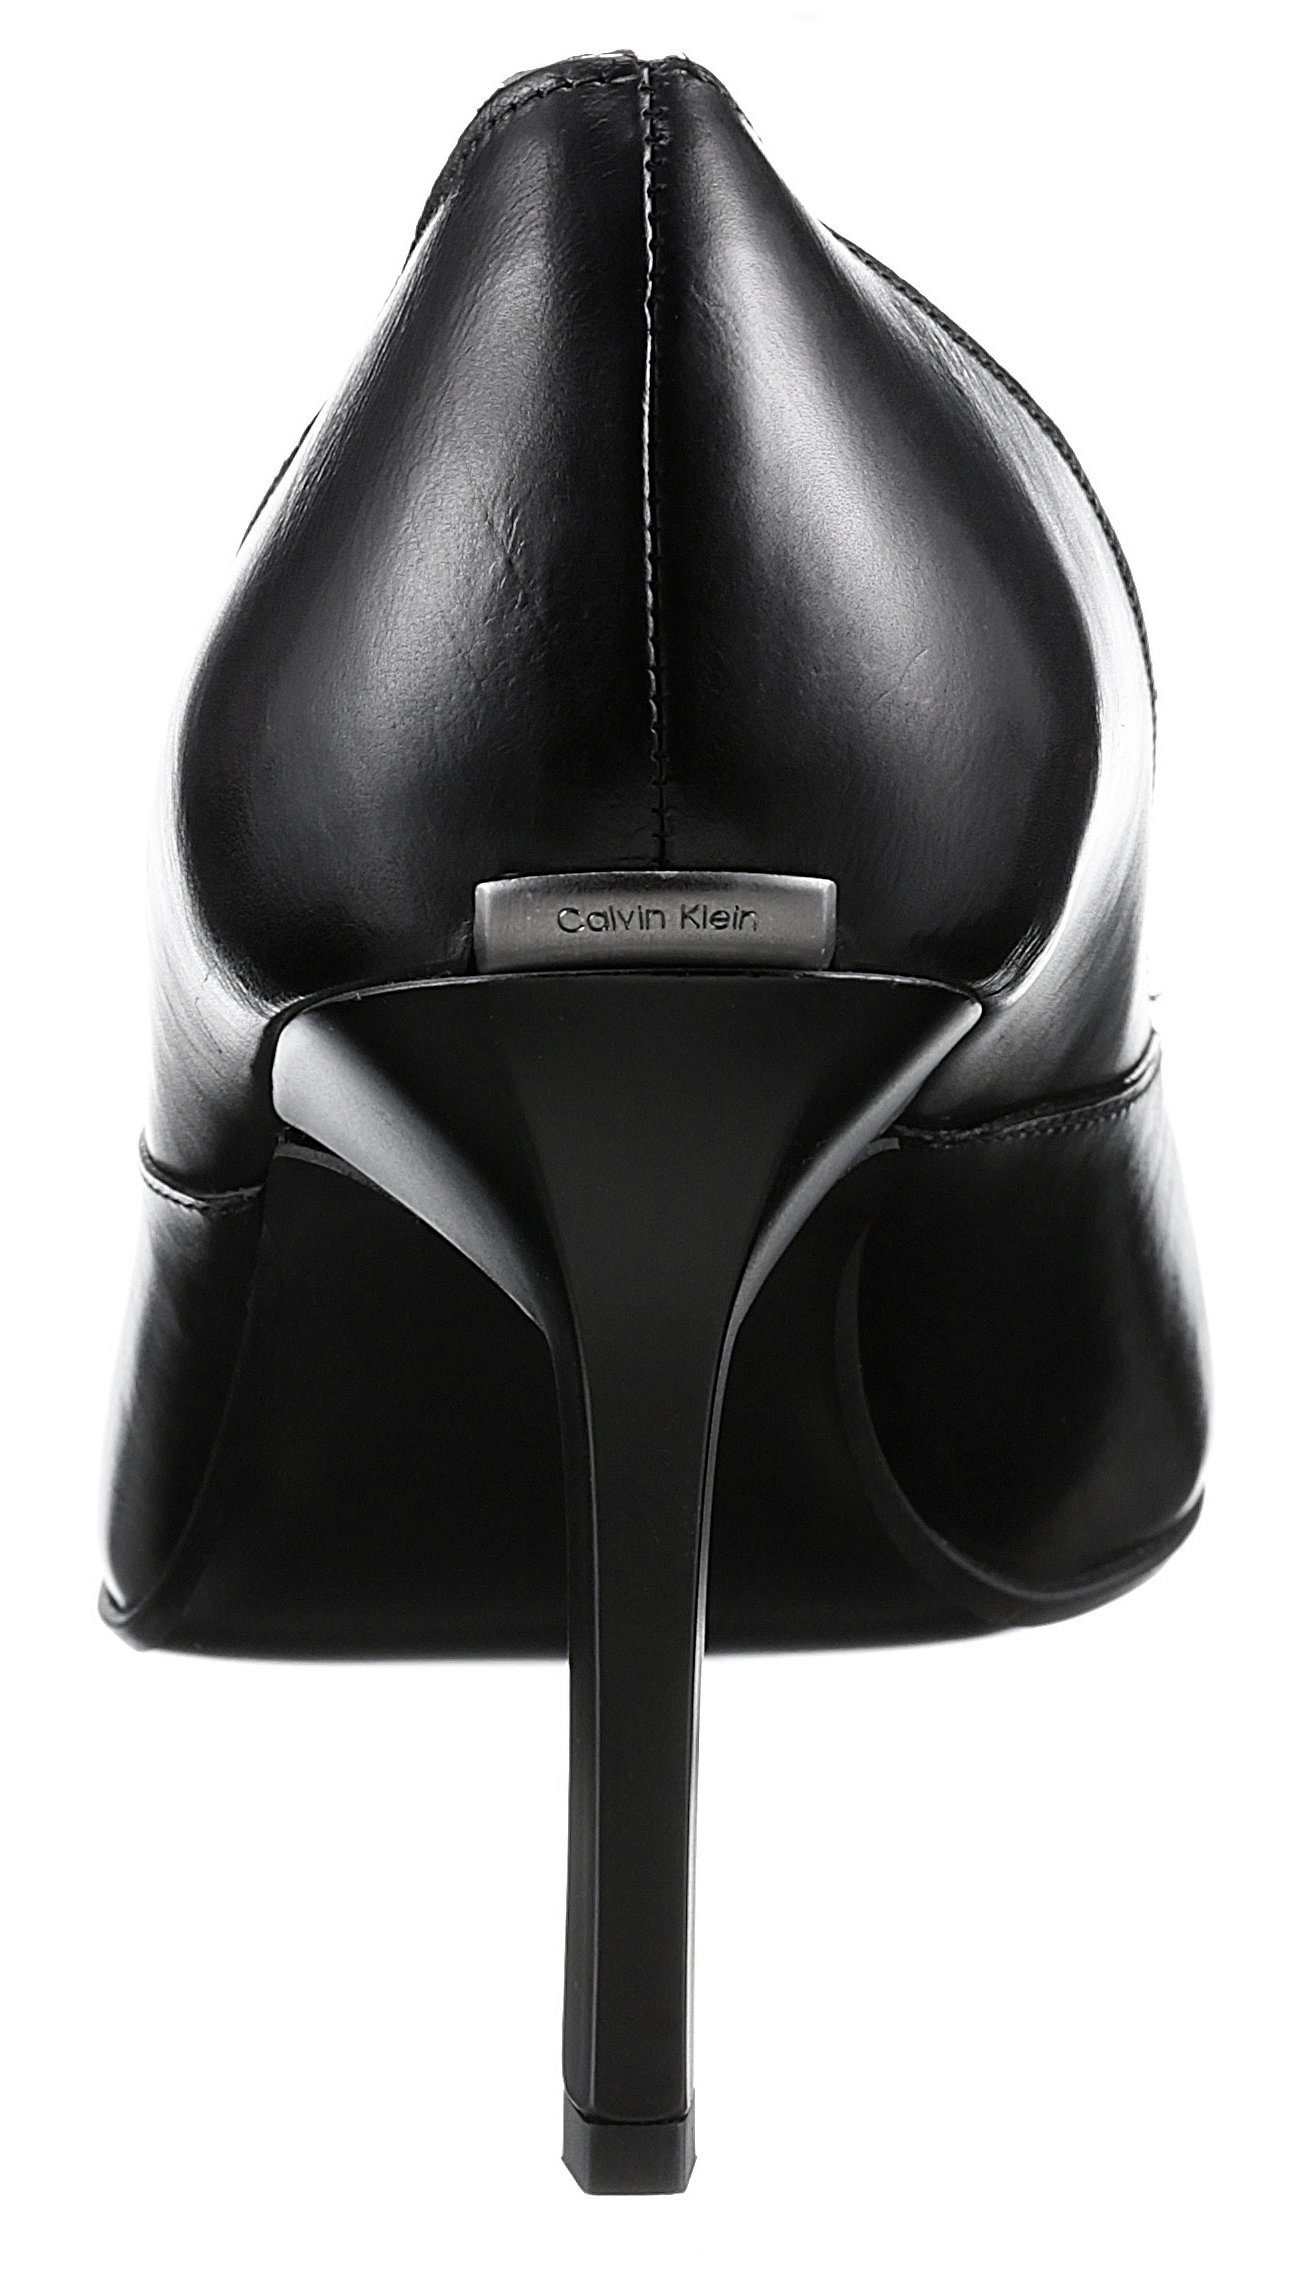 Calvin Klein GEO spitze schwarz Stilettoabsatz, Pumps 90 Form PUMP STILETTO mit modischem